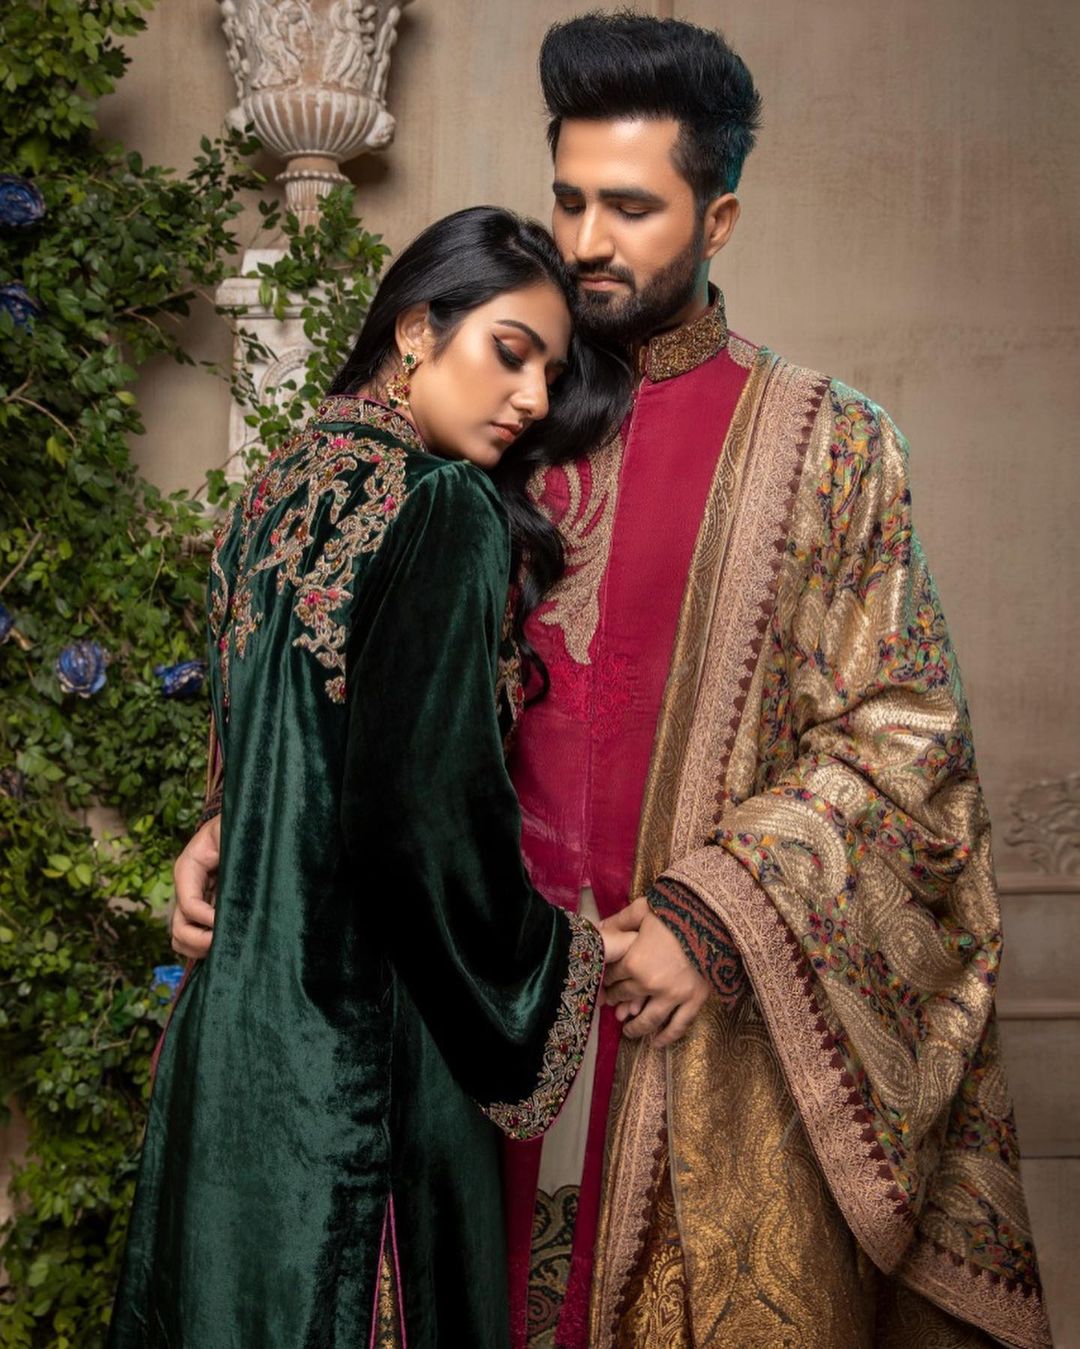 Beautiful Couple Sarah Khan and Falak Shabir - Latest Pictures